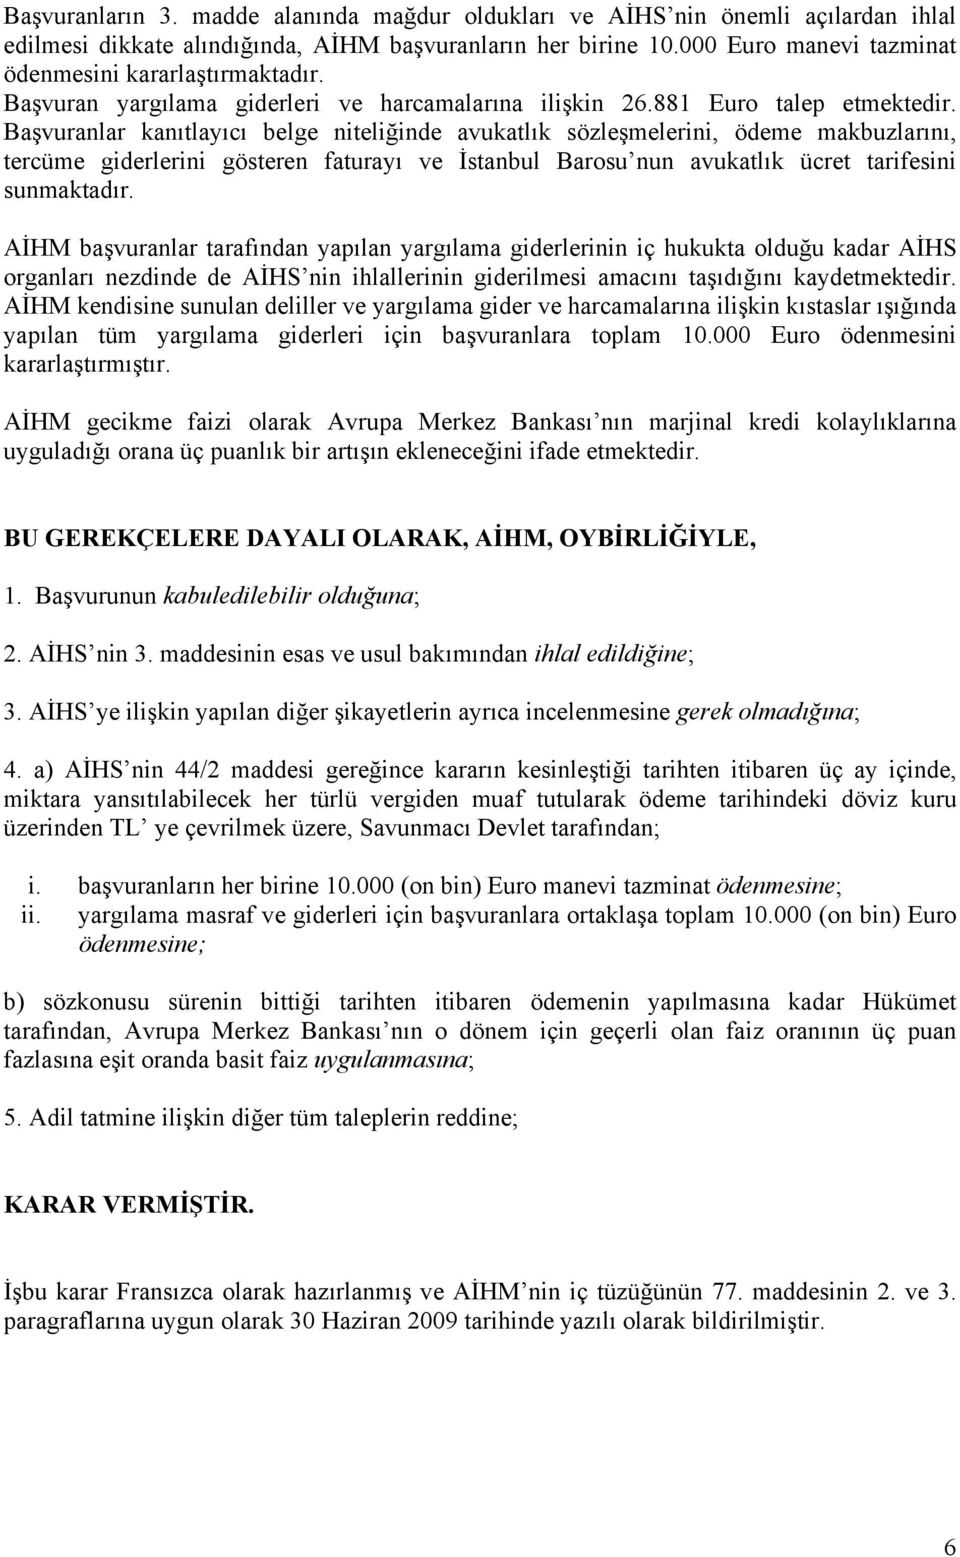 Başvuranlar kanıtlayıcı belge niteliğinde avukatlık sözleşmelerini, ödeme makbuzlarını, tercüme giderlerini gösteren faturayı ve İstanbul Barosu nun avukatlık ücret tarifesini sunmaktadır.